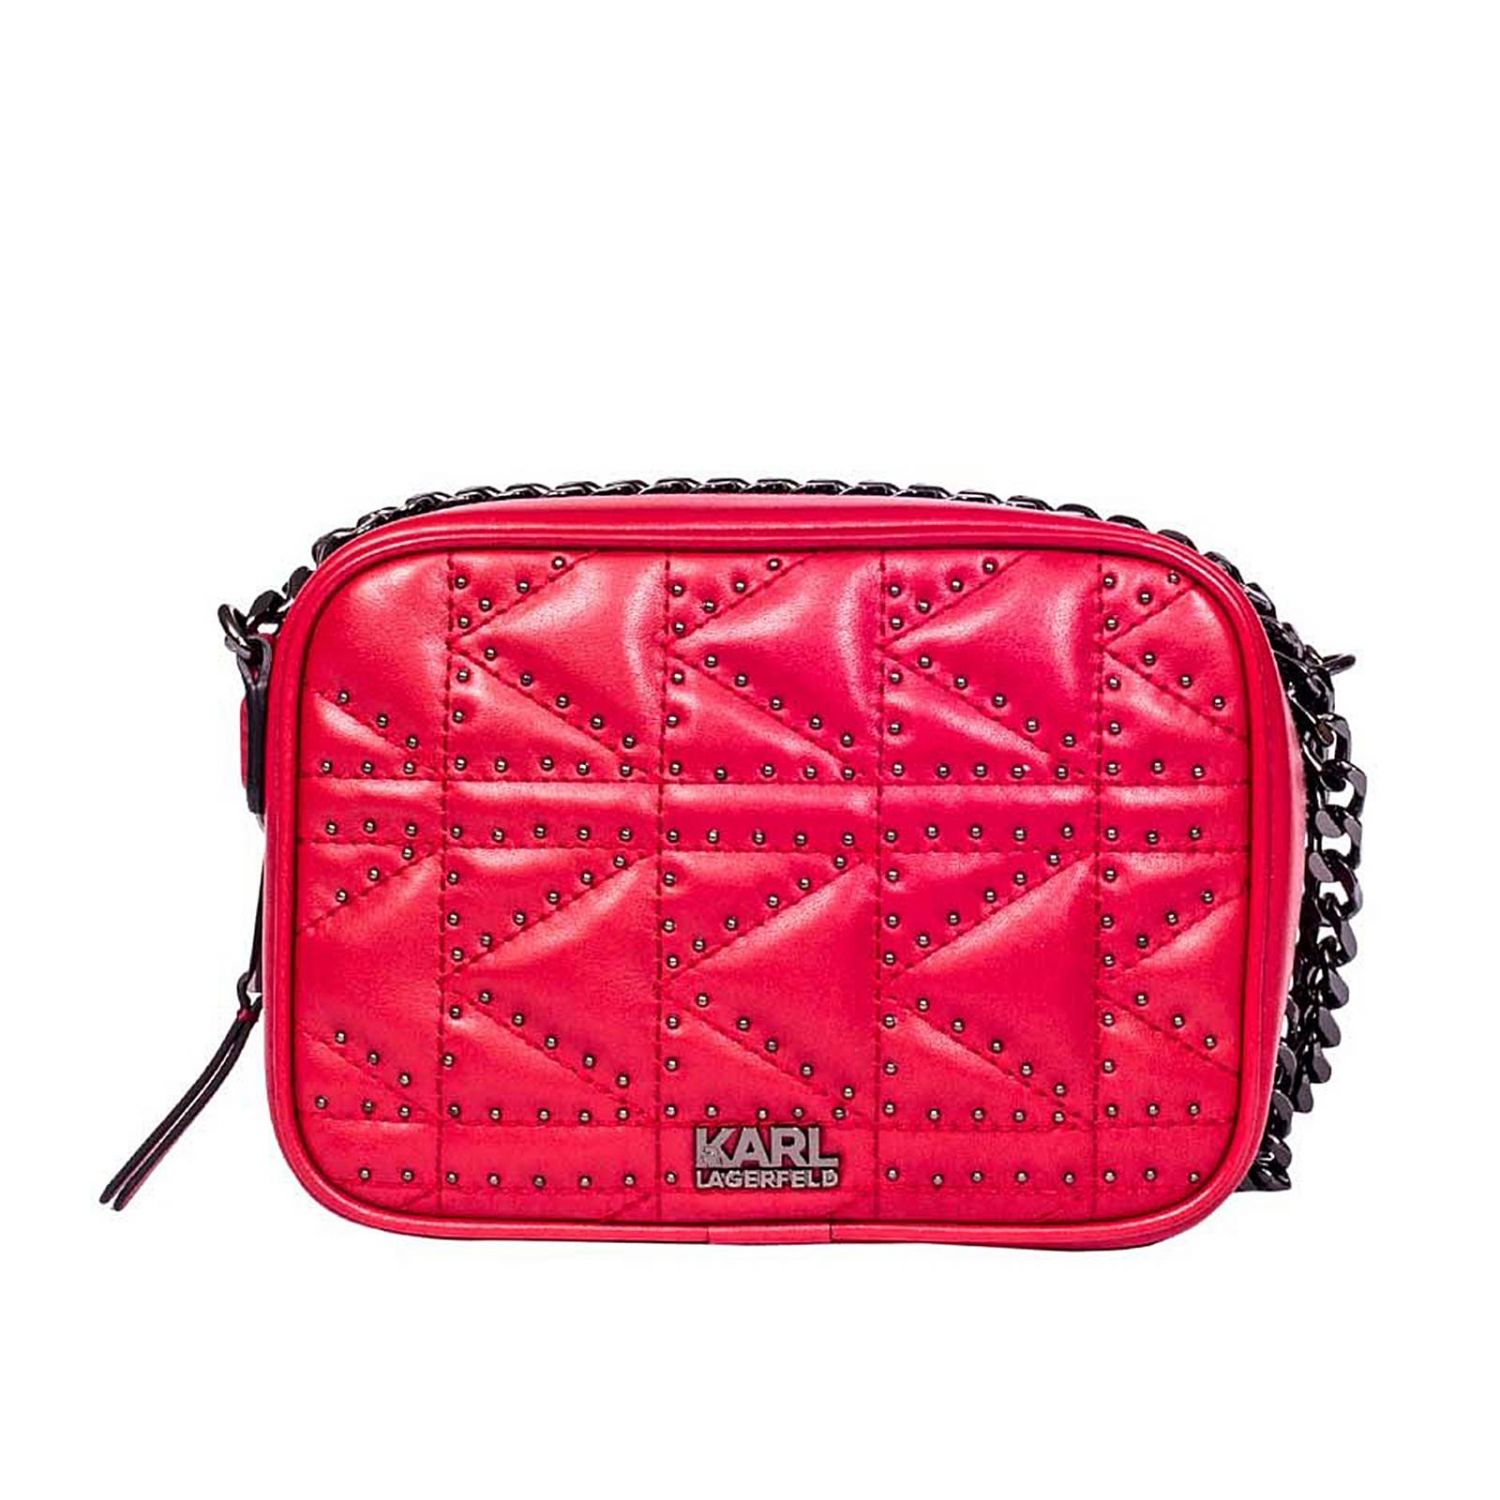 Karl Lagerfeld Outlet: Handbag women | Handbag Karl Lagerfeld Women Red ...